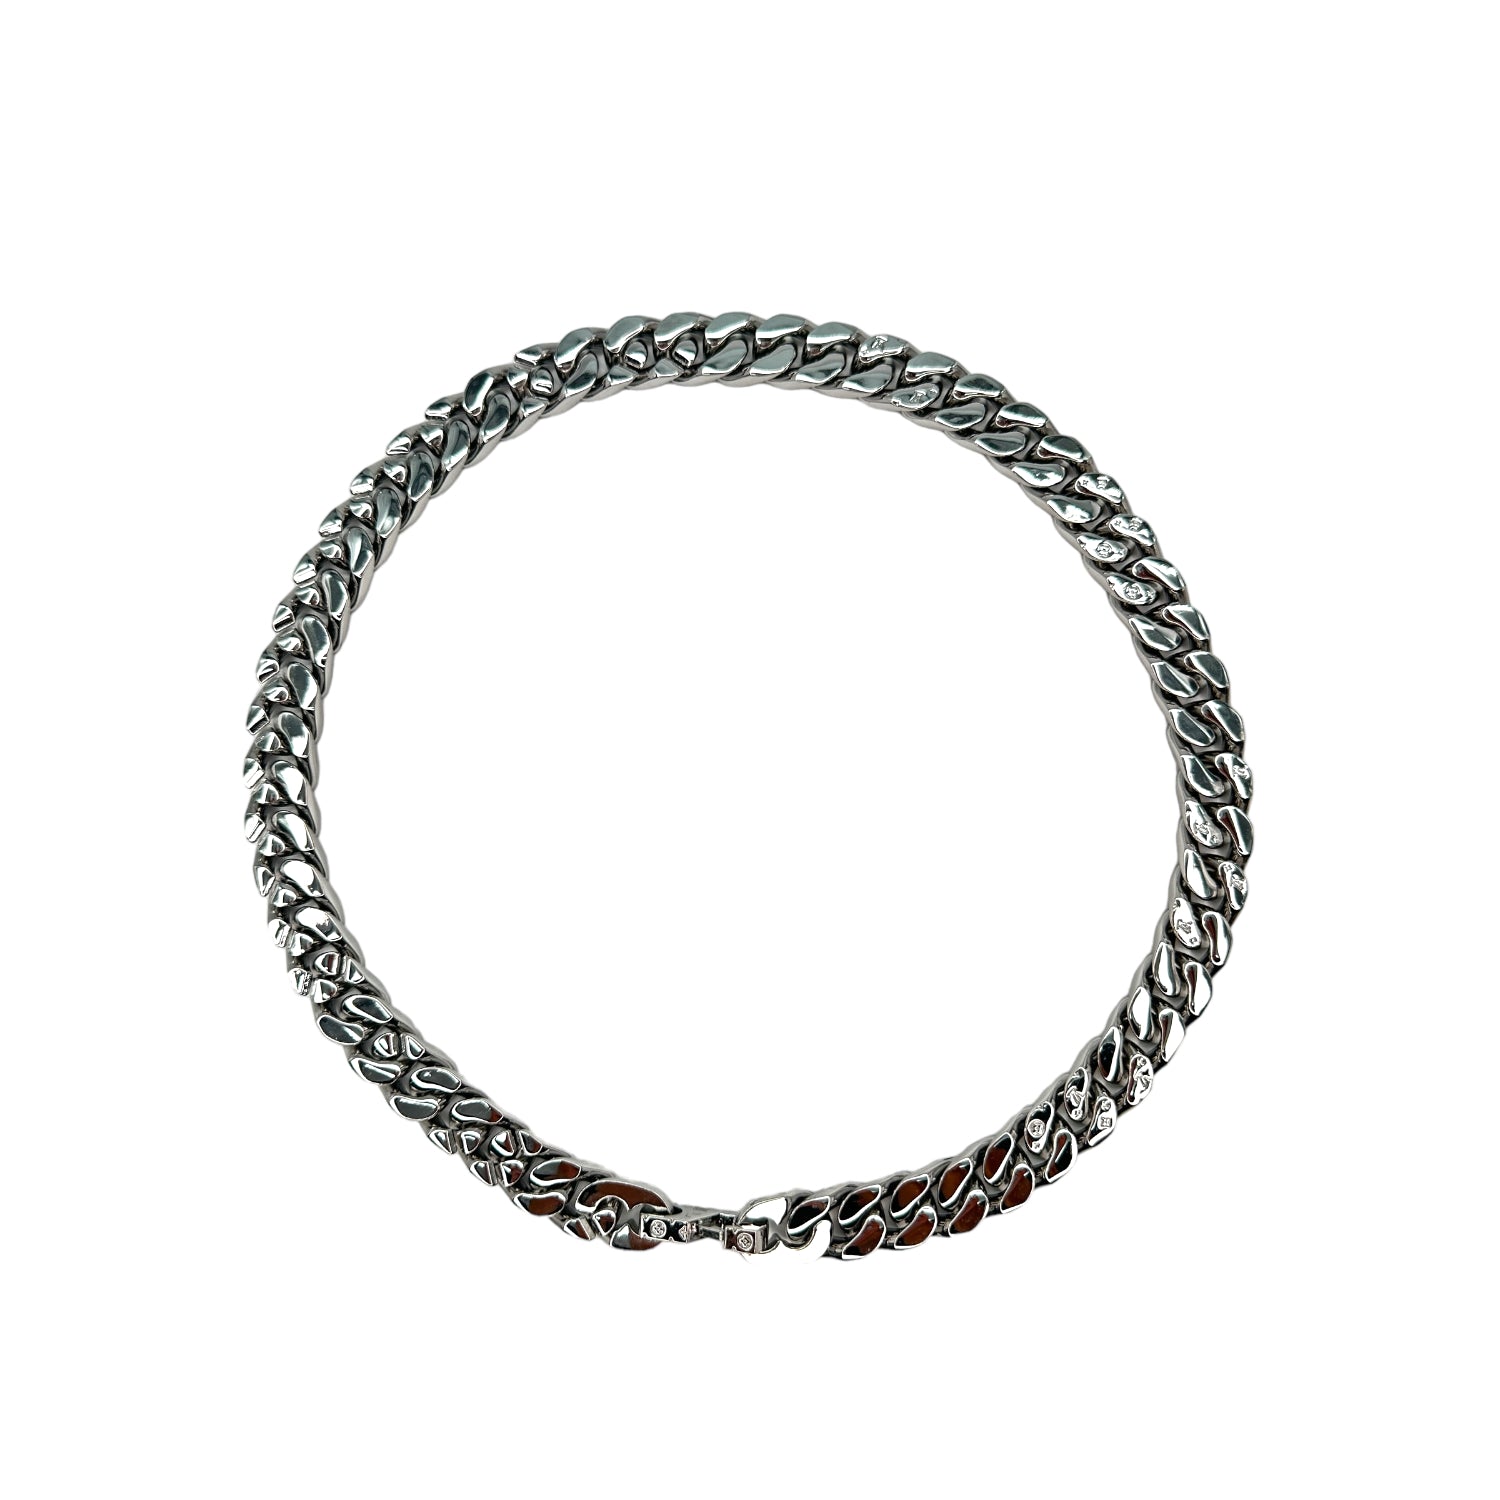 LOUIS VUITTON M69987 Monogram Collier Bracelet LV Chain Links Necklace